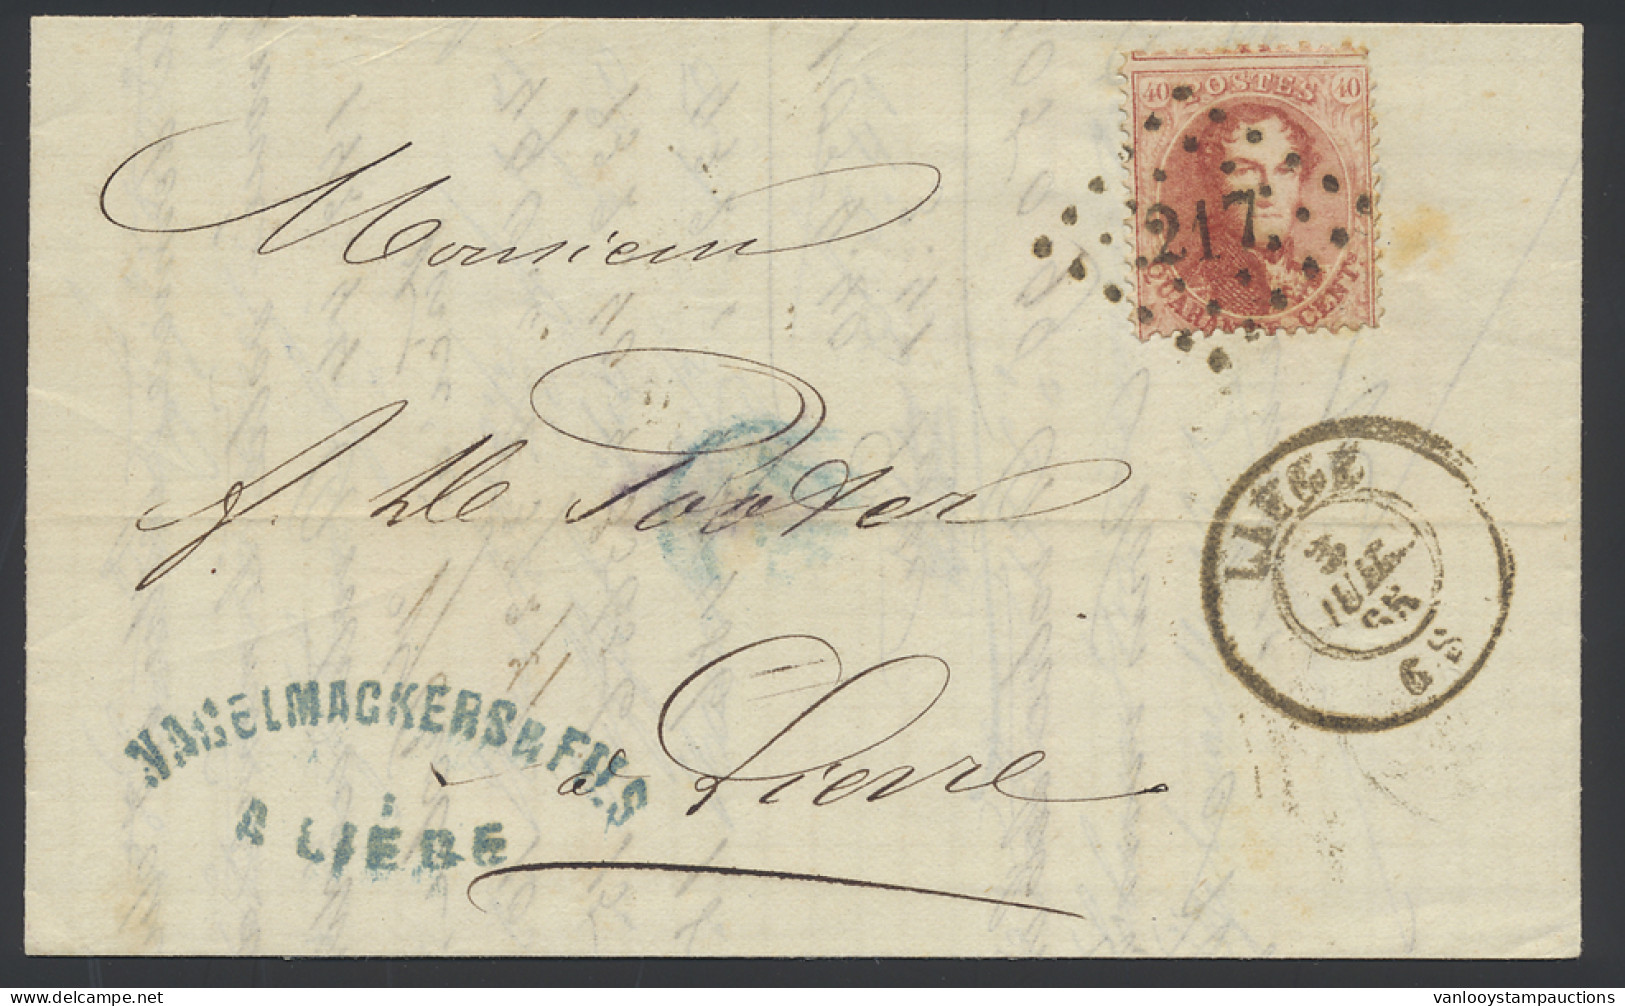 1865 N° 16 40c. Karmijnroze Op Brief, Puntstempel 217 Liège, Dd. 3 Juli 65, Naar Lierre, Dubbele Port Binnenland (geen G - 1863-1864 Medaglioni (13/16)